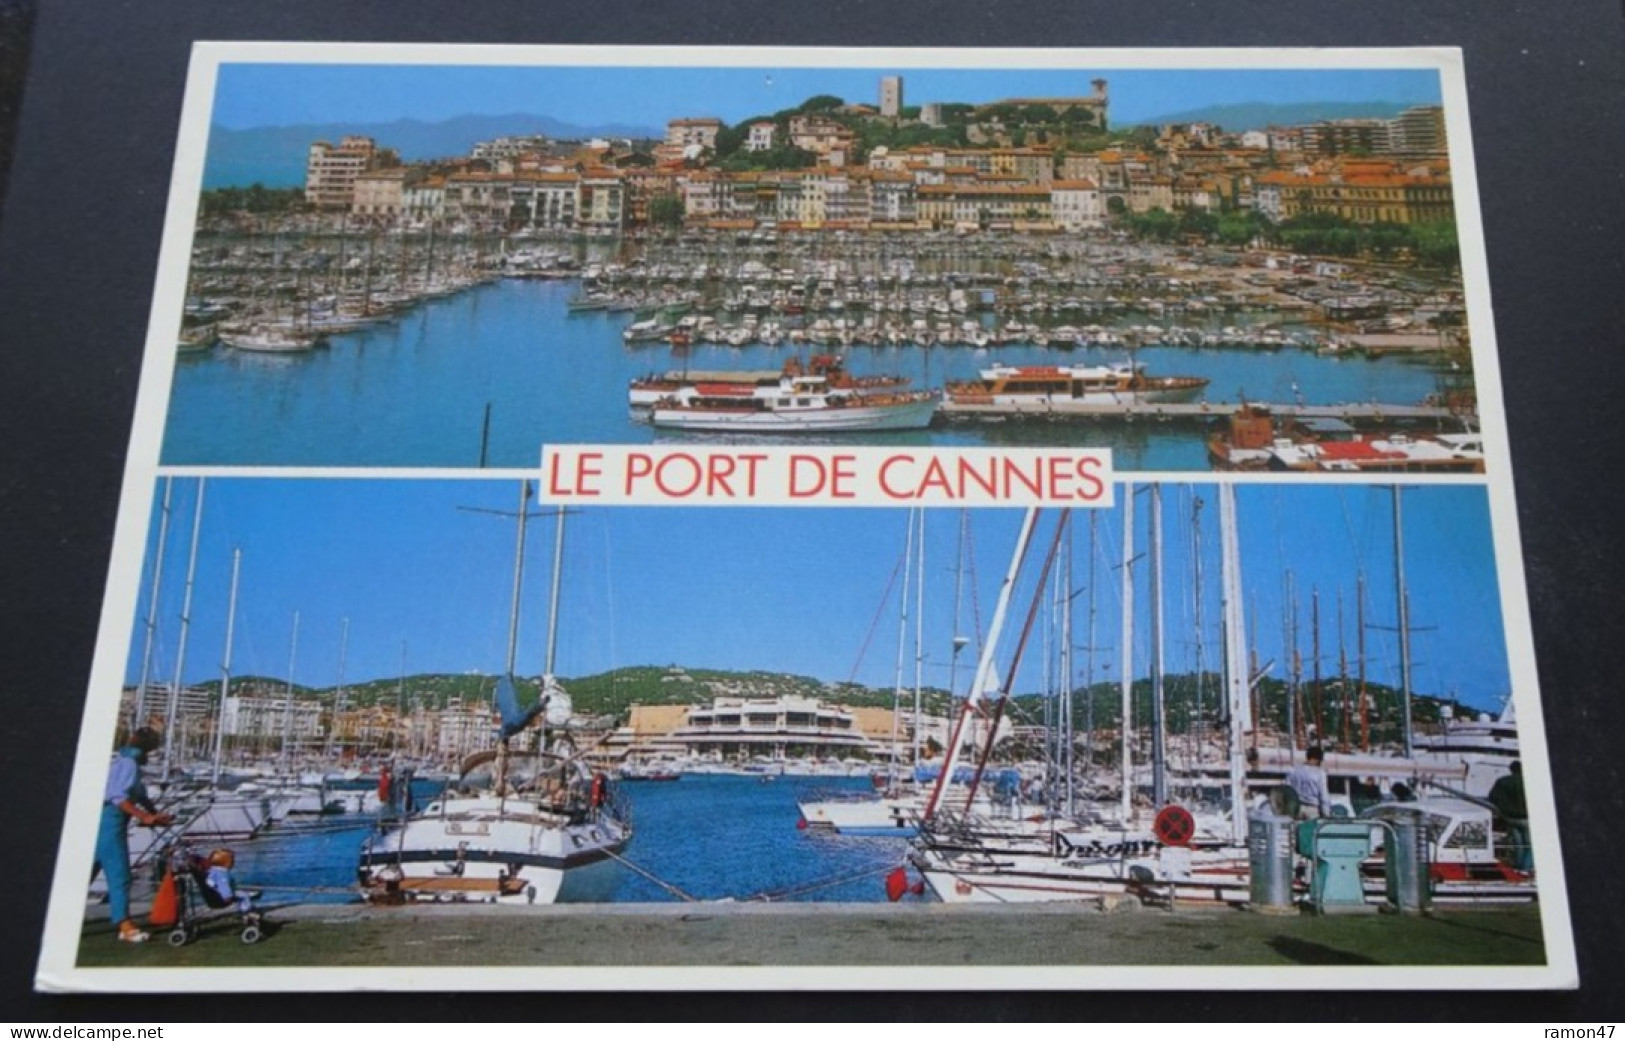 Le Port De Cannes - Sté PEC, Septèmes Les Vallons - As De Coeur - Cannes